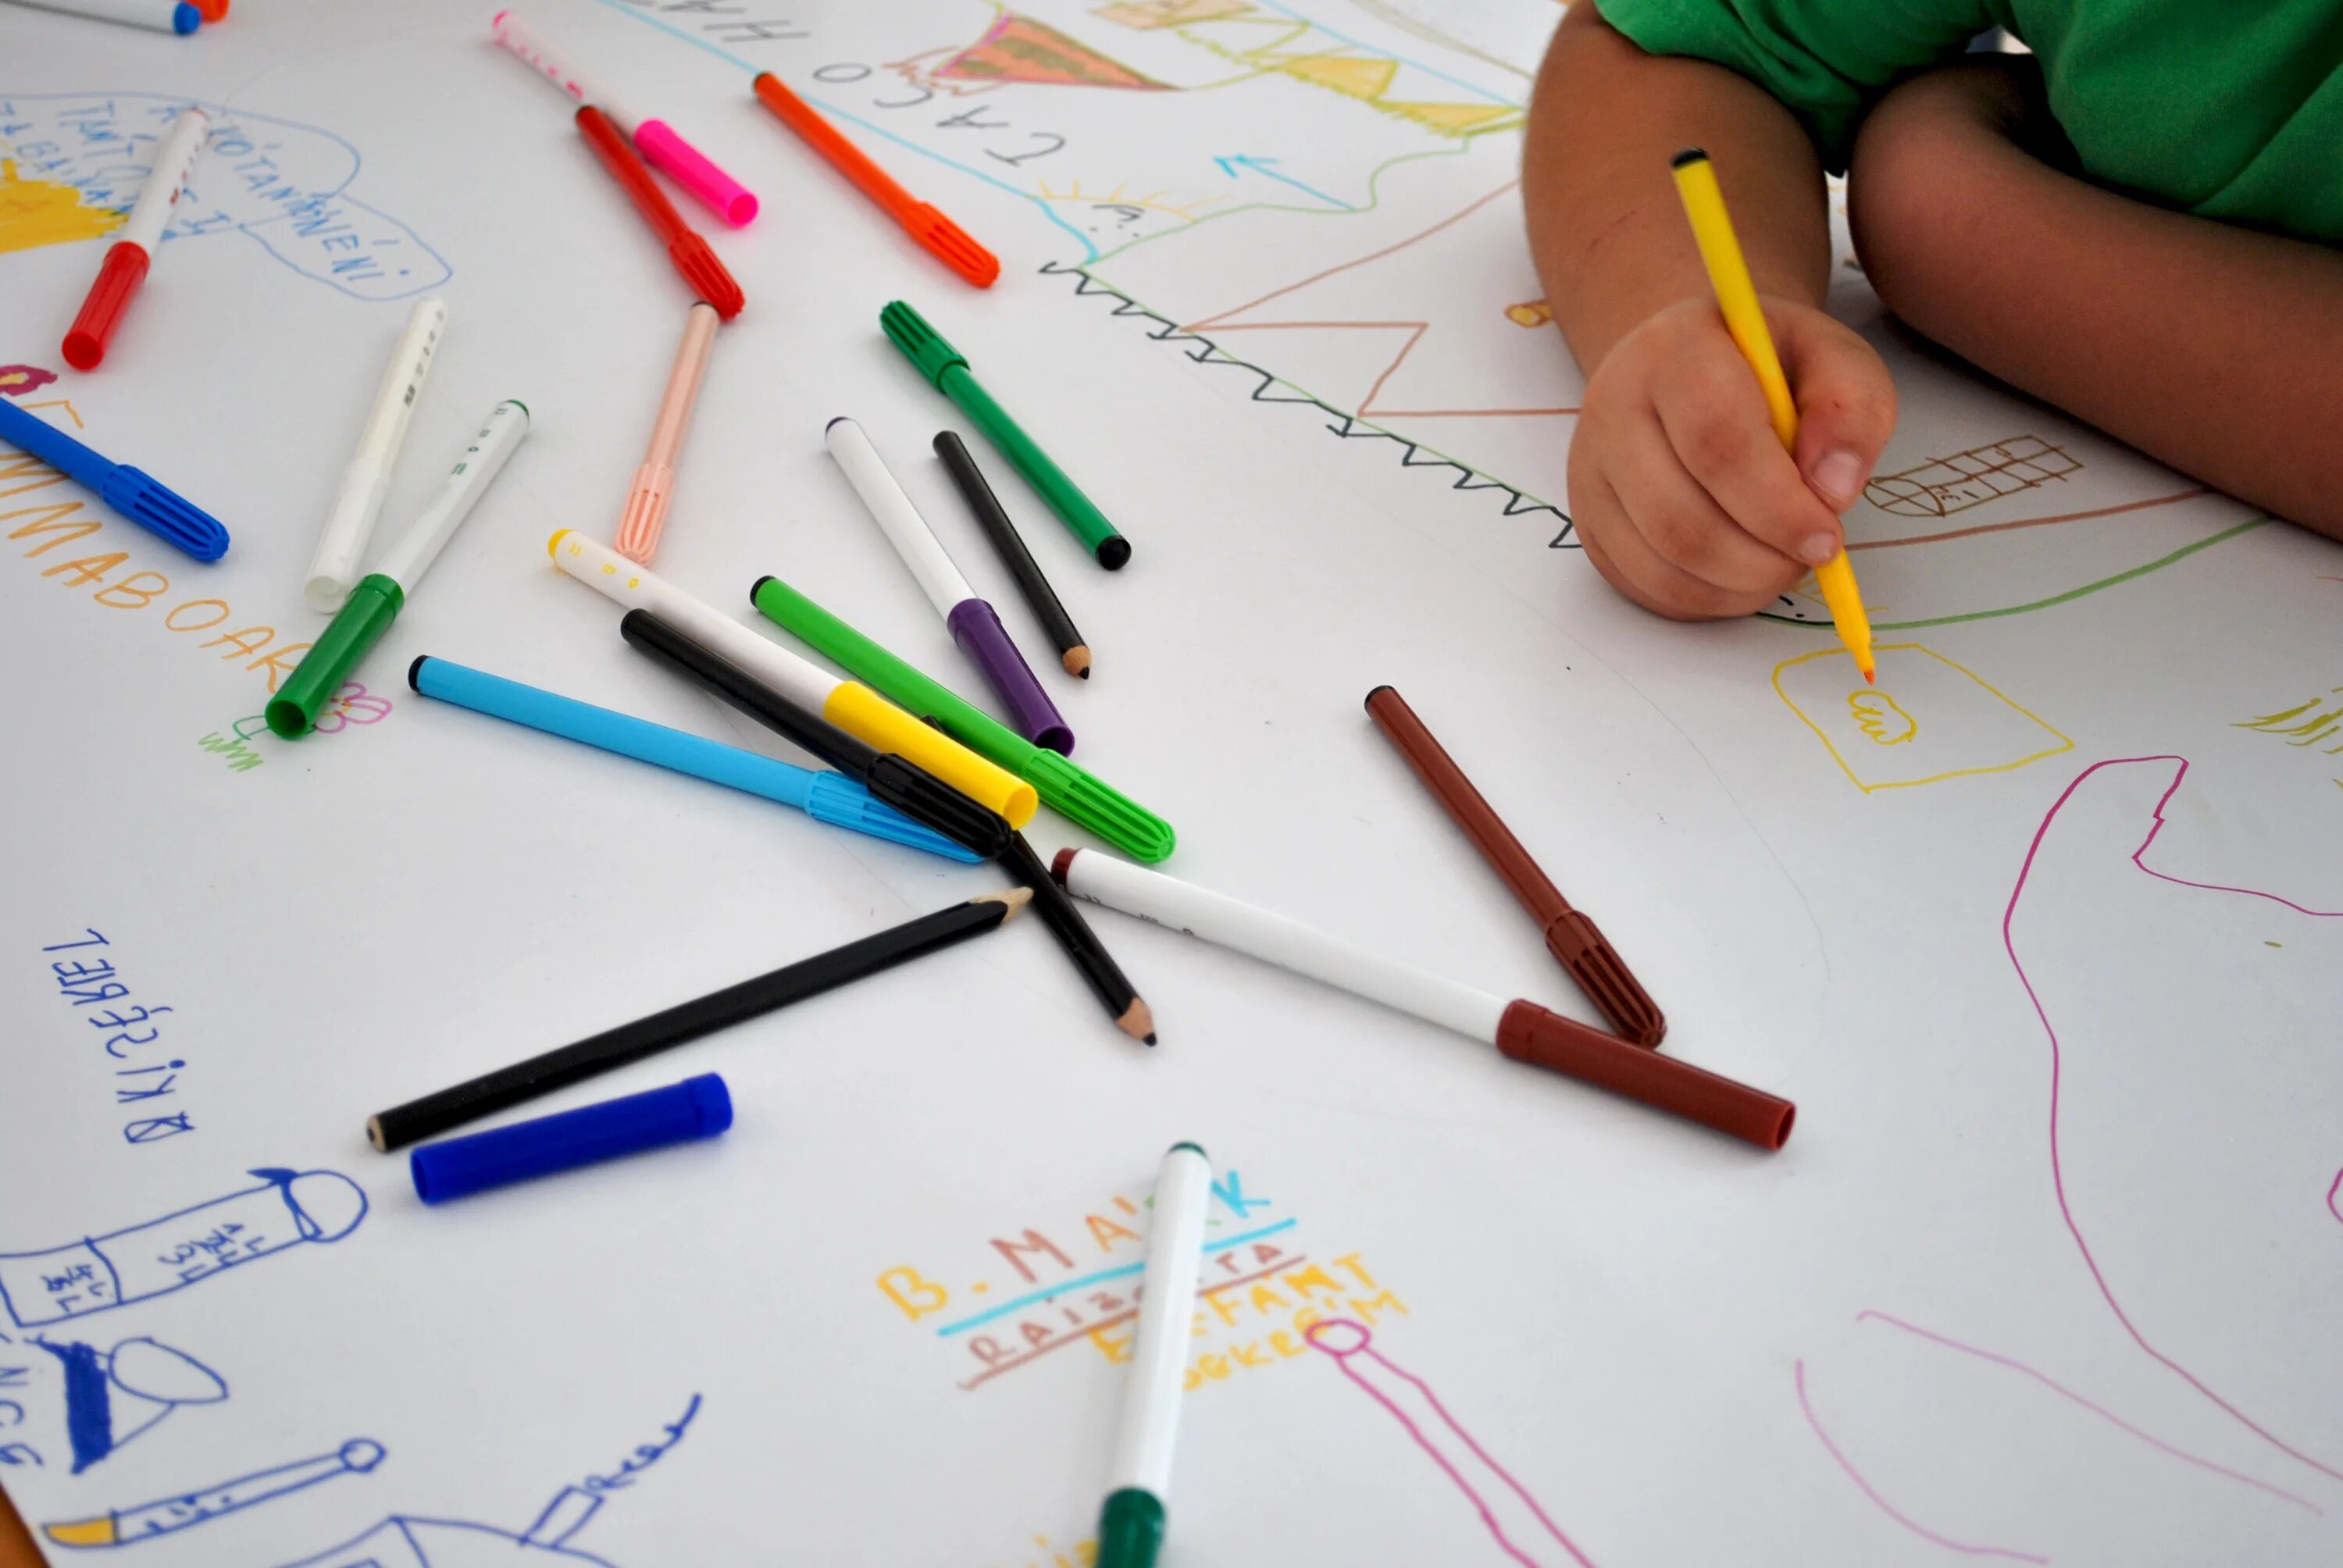 Руки карандашом. Детская рука с карандашом. Фотосессия с карандашами. Карандаш и карандаши в руках.